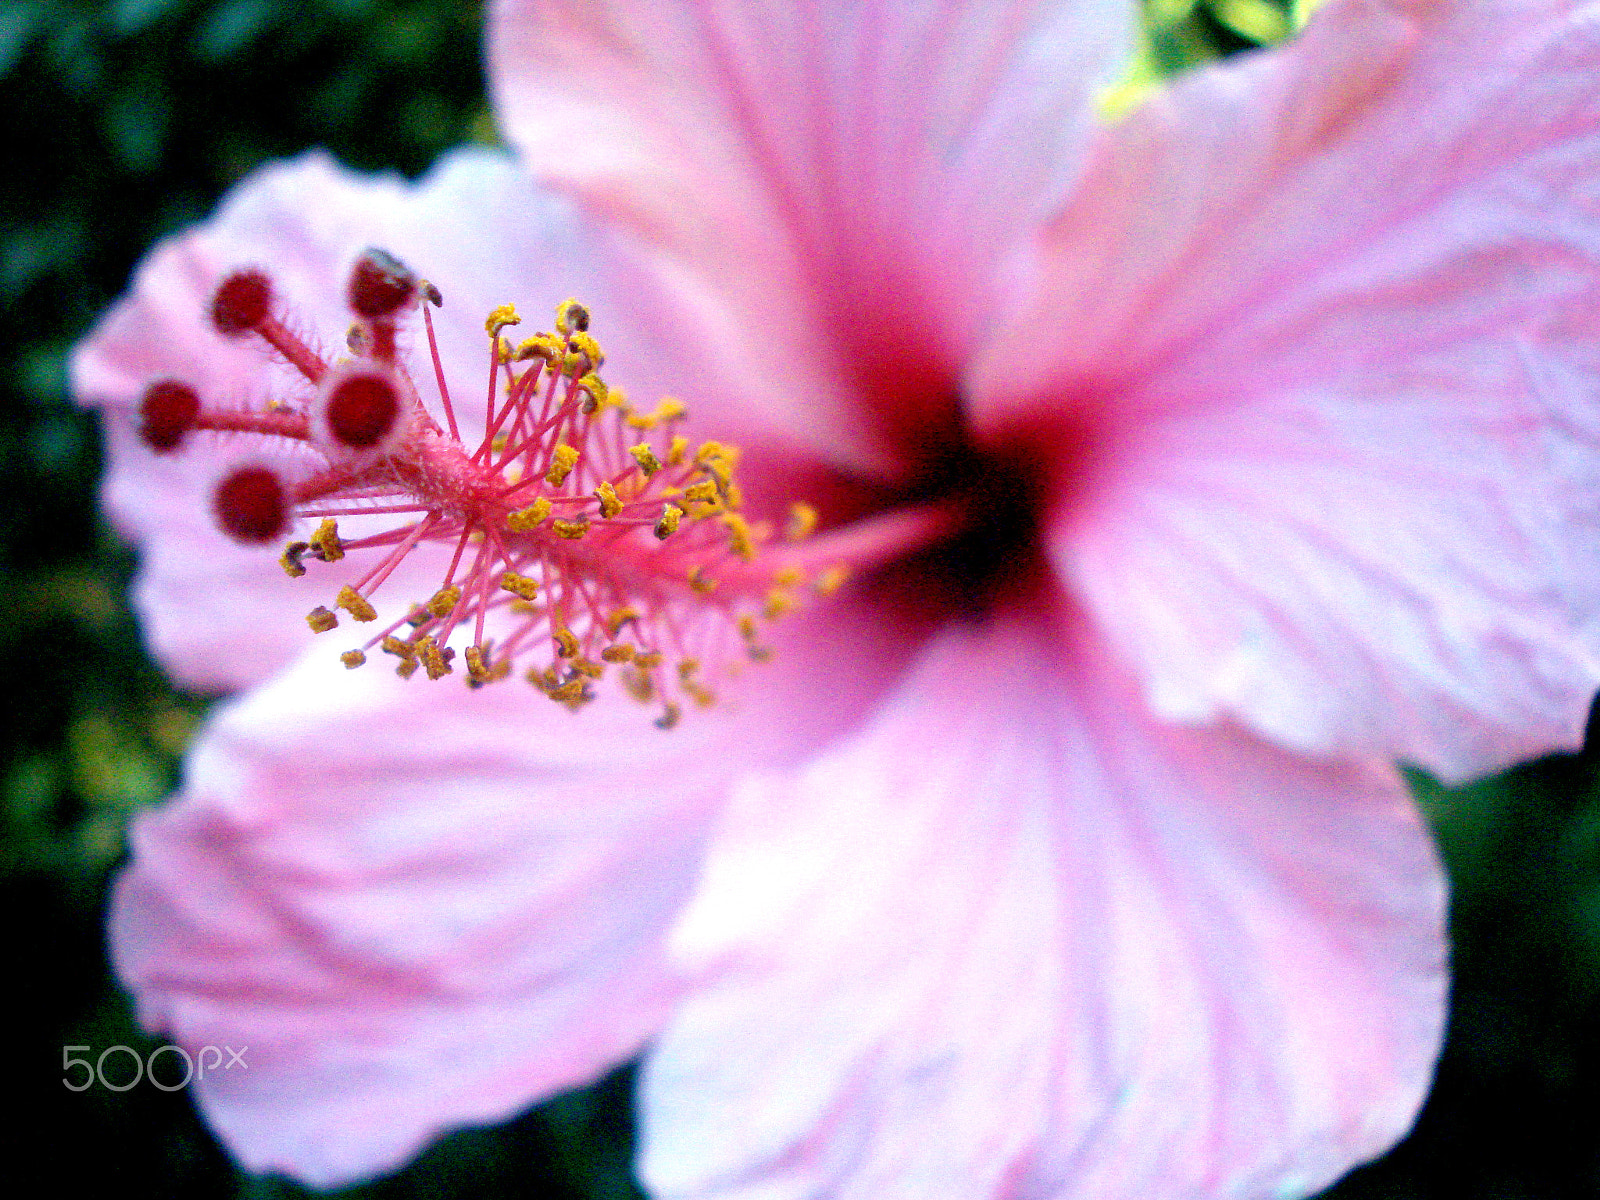 Sony DSC-W55 sample photo. Focus hibiscus. photography